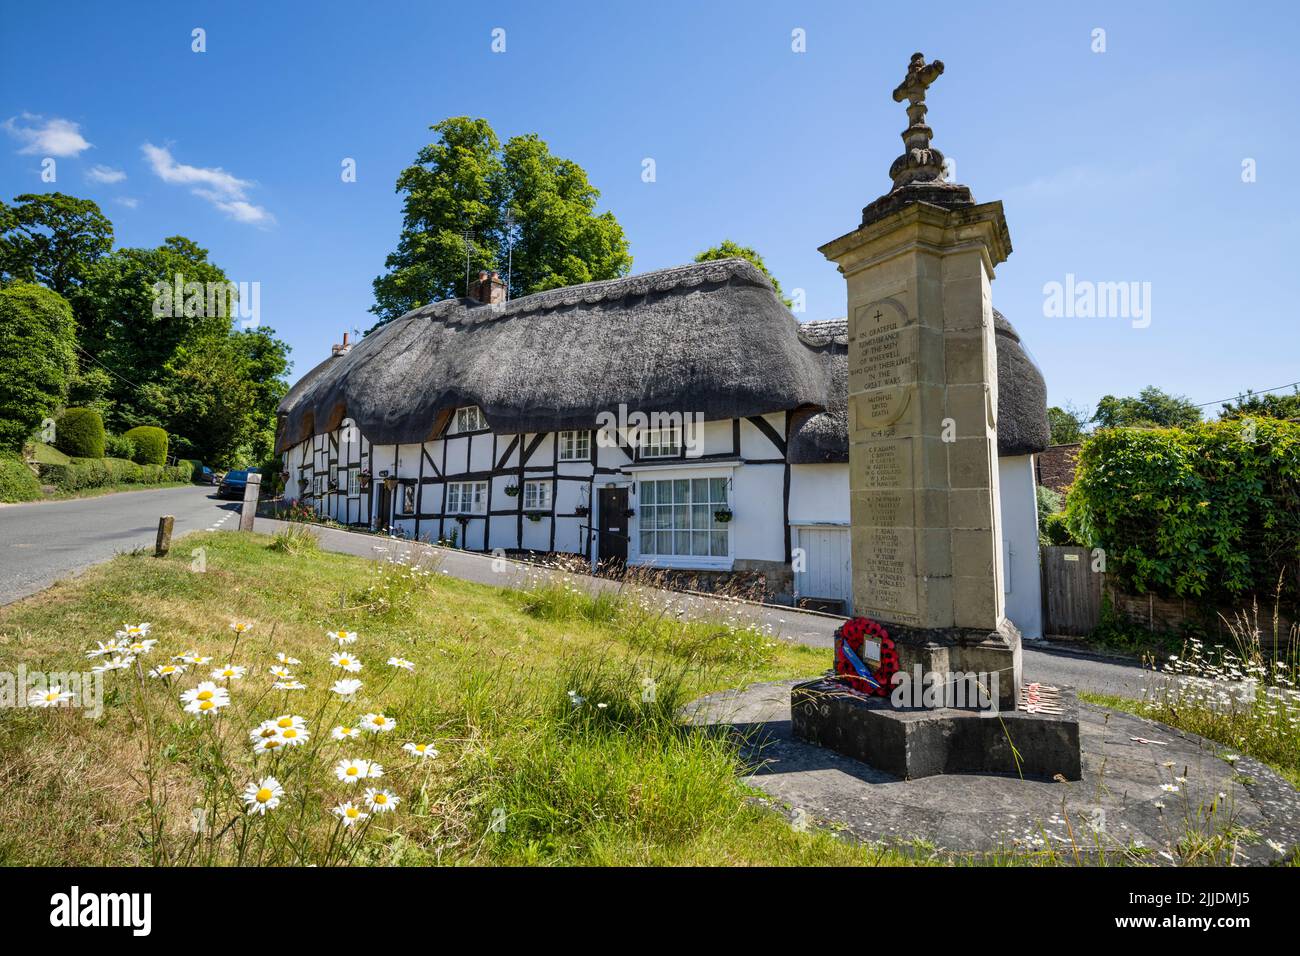 Case con tetto di paglia e il Memoriale di guerra nella piazza del villaggio, Wherwell, Test Valley, Hampshire, Inghilterra, Regno Unito, Europa Foto Stock